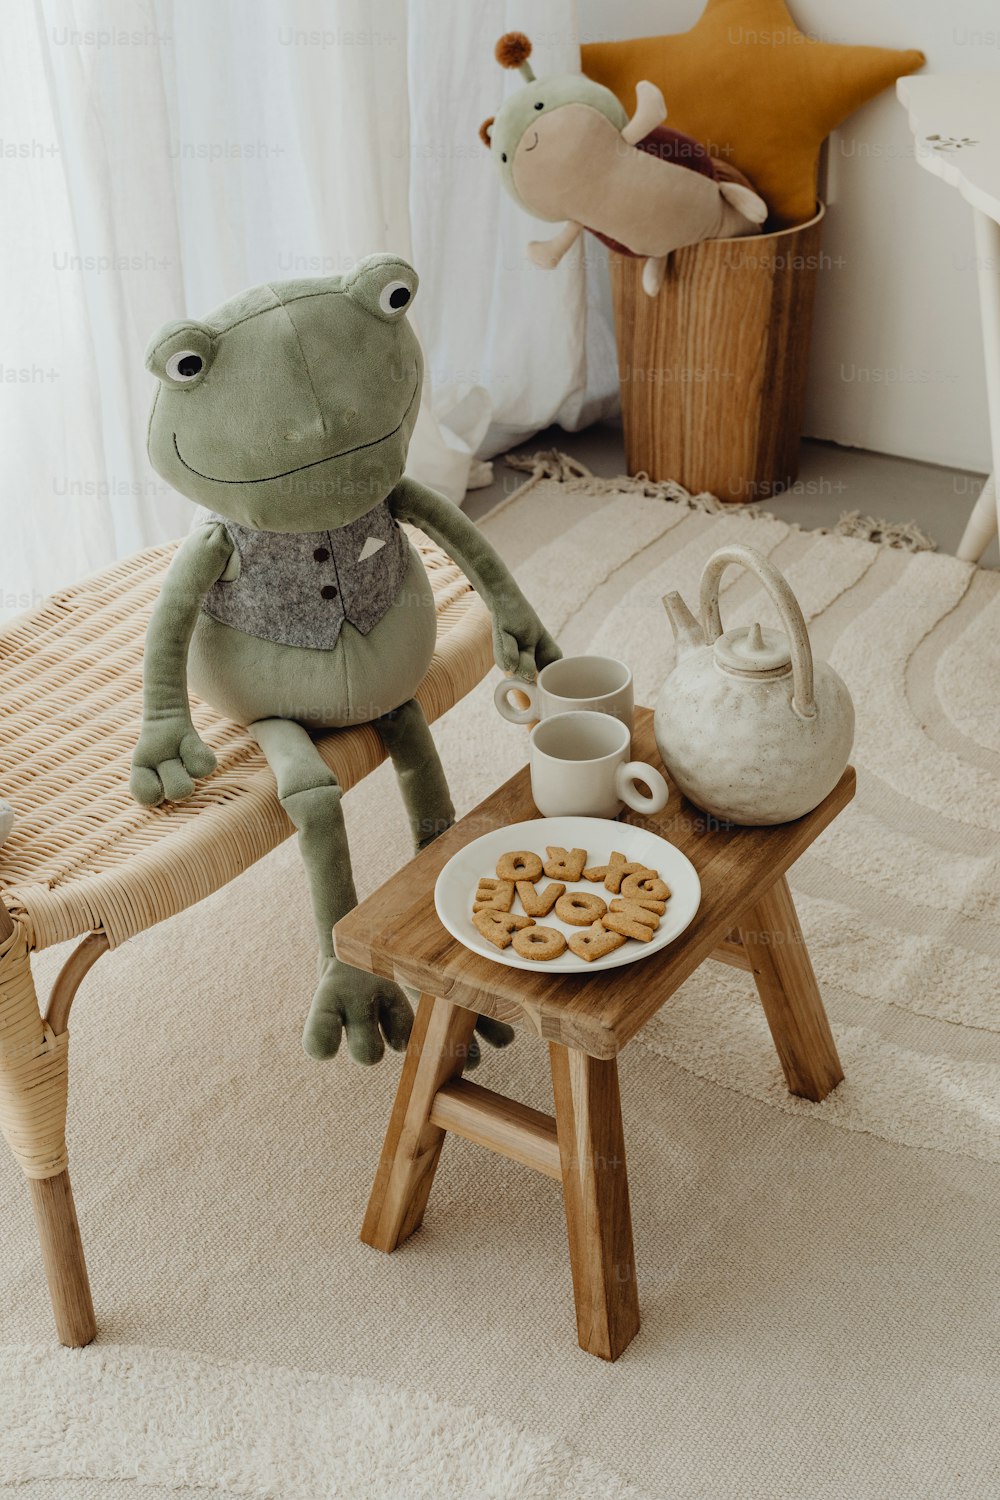 ein Frosch, der auf einem Stuhl neben einem Teller mit Essen sitzt